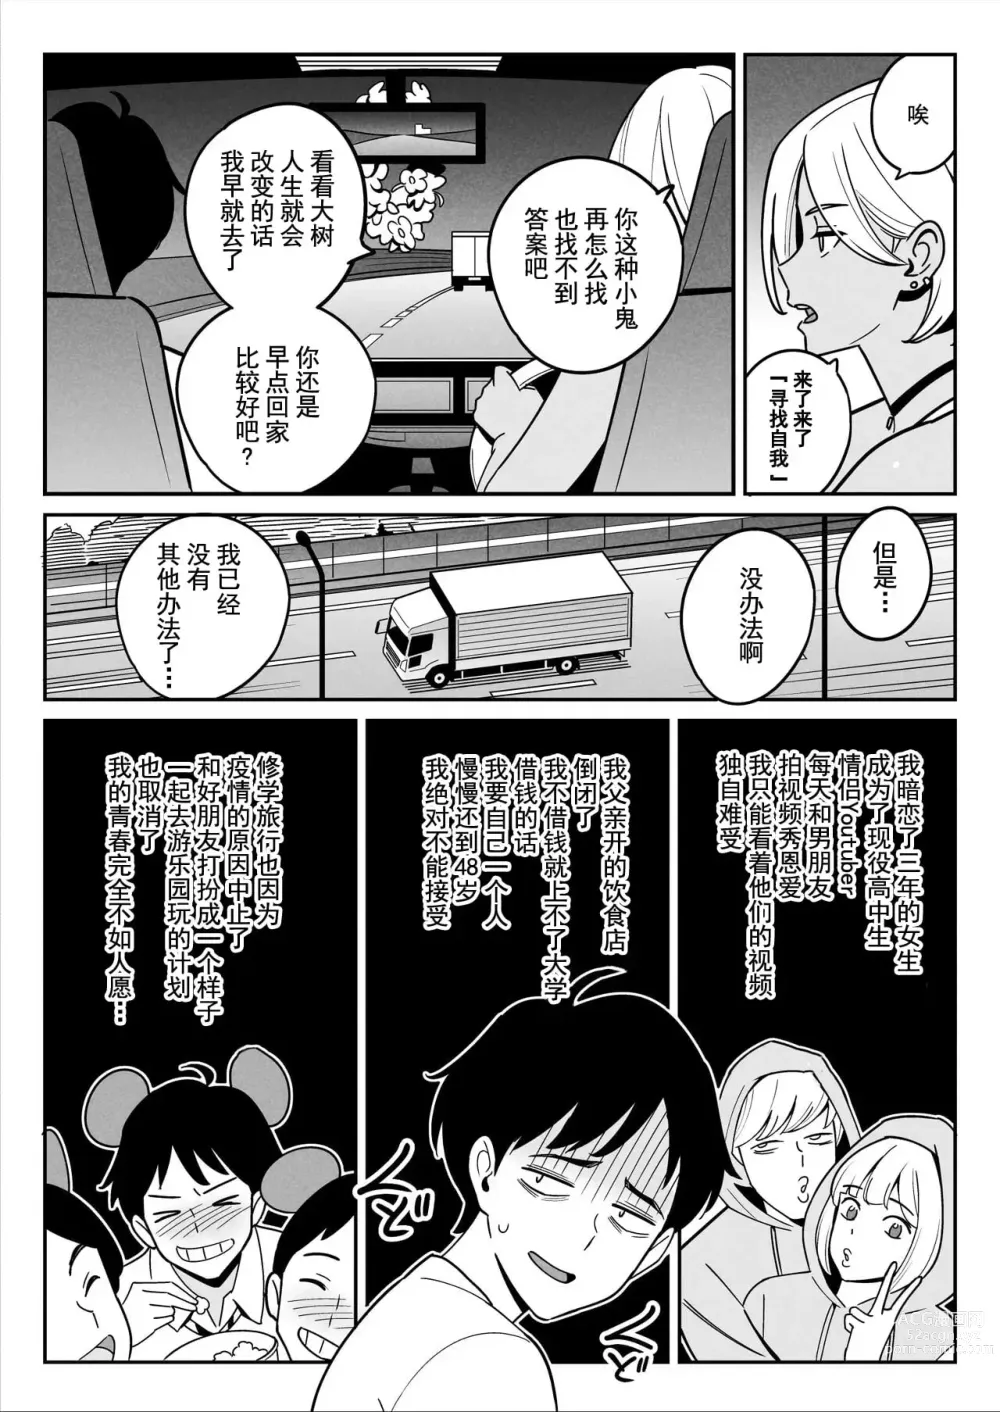 Page 13 of doujinshi Muchi-Niku Heaven de Pan Pan Pan